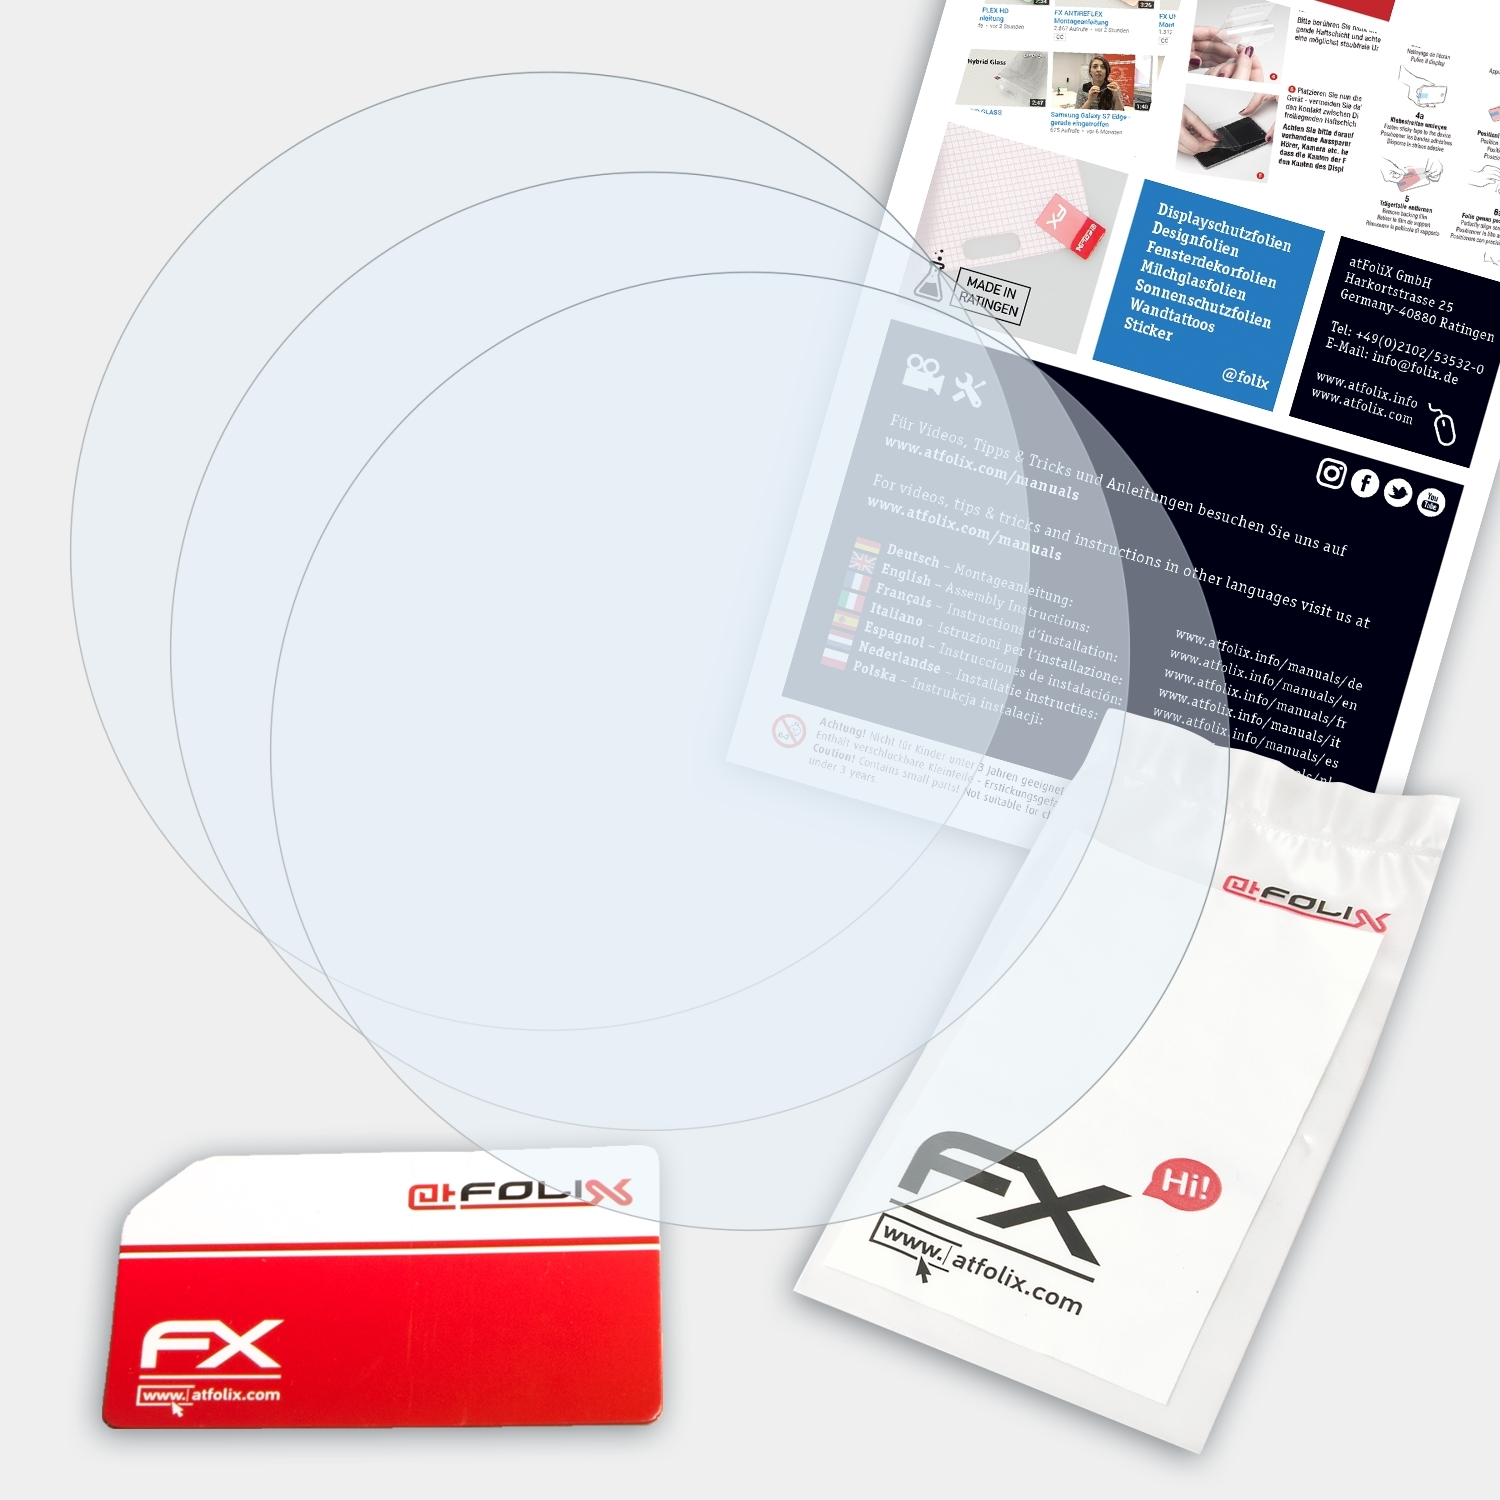 ATFOLIX 3x Pursuit) FX-Clear Displayschutz(für Q Modern Fossil